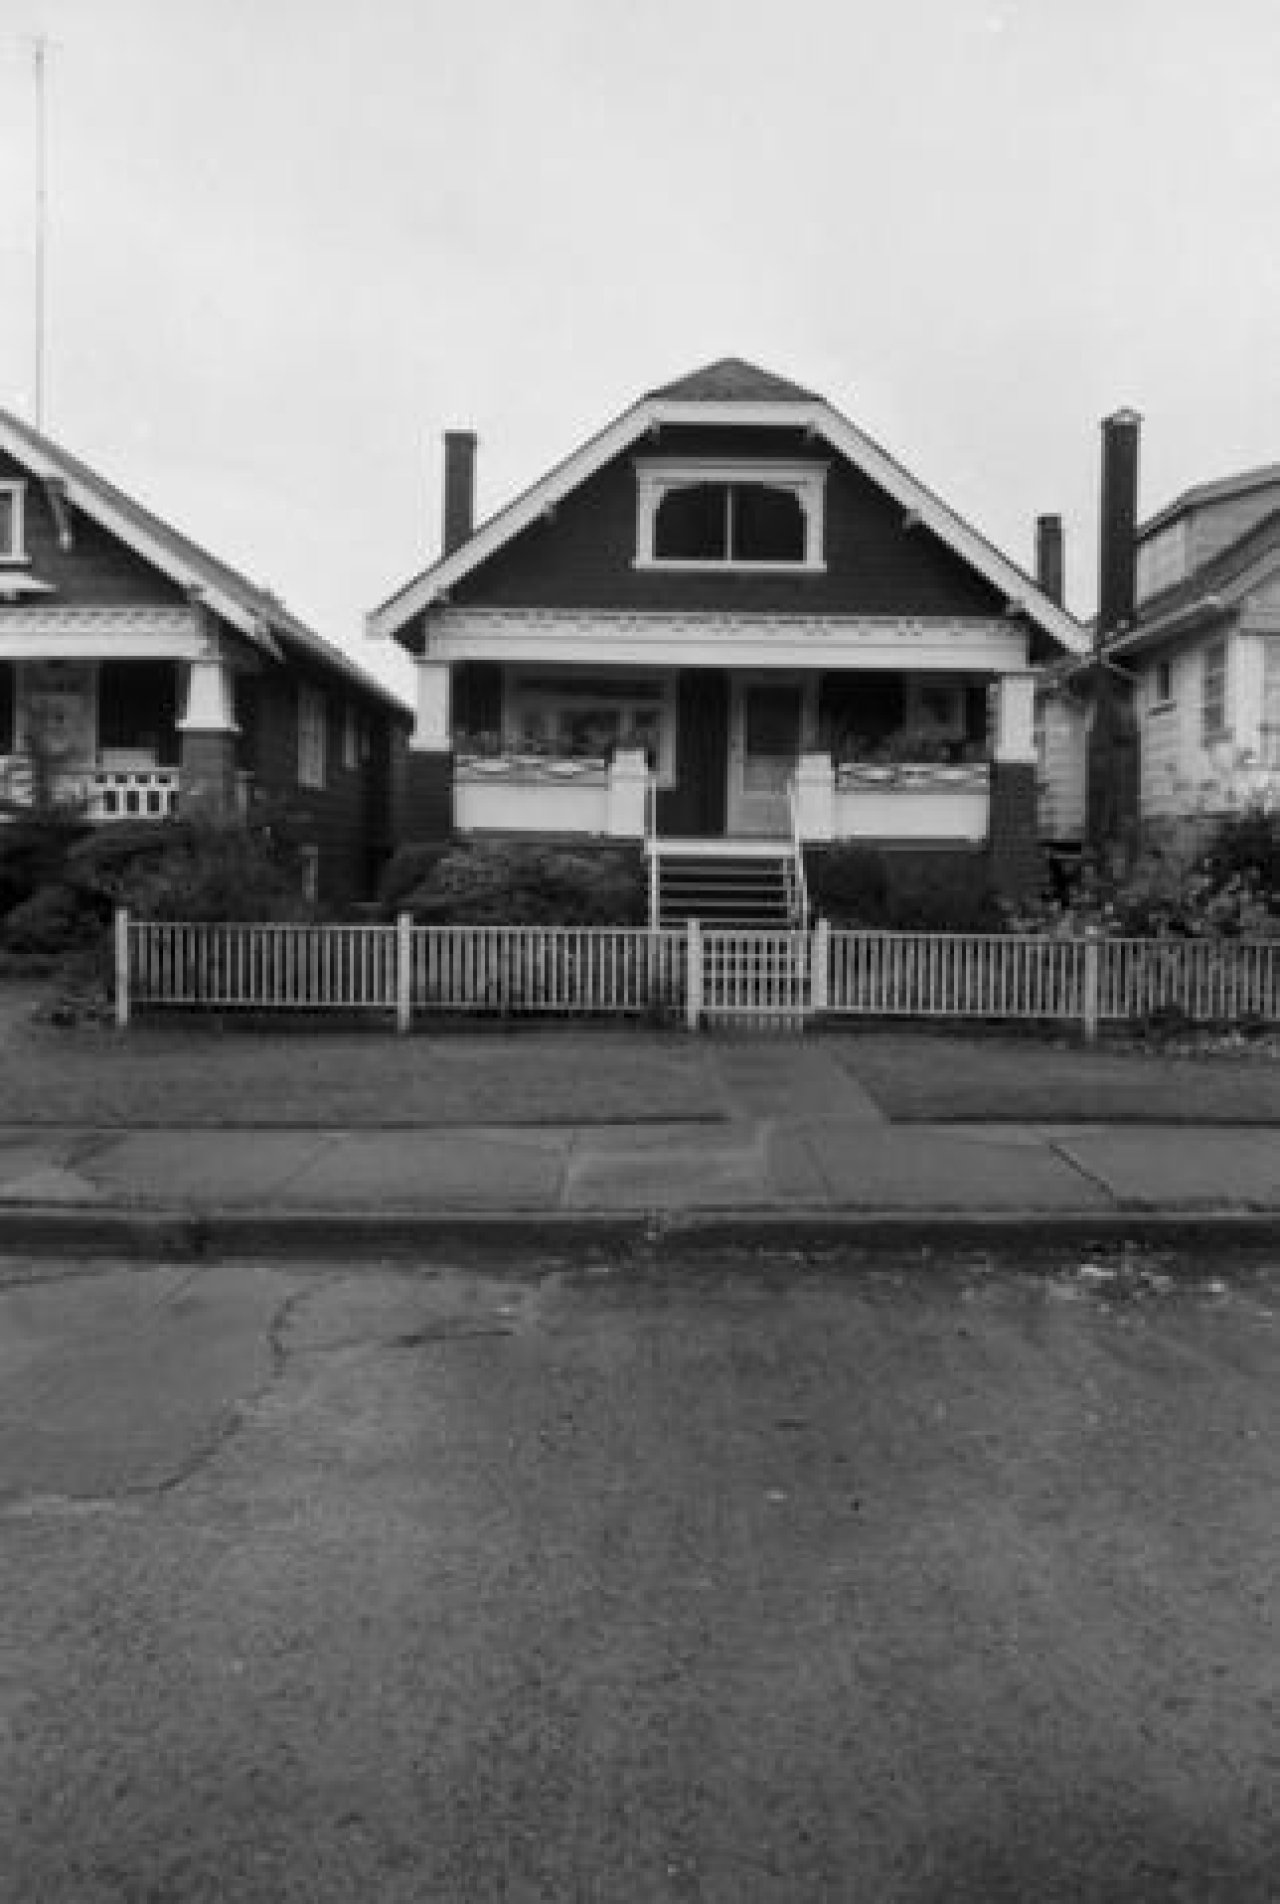 3160 West 3rd Avenue c. 1985

Source: City of Vancouver Archives Item : CVA 790-1571 - 3160 West 3rd Avenue